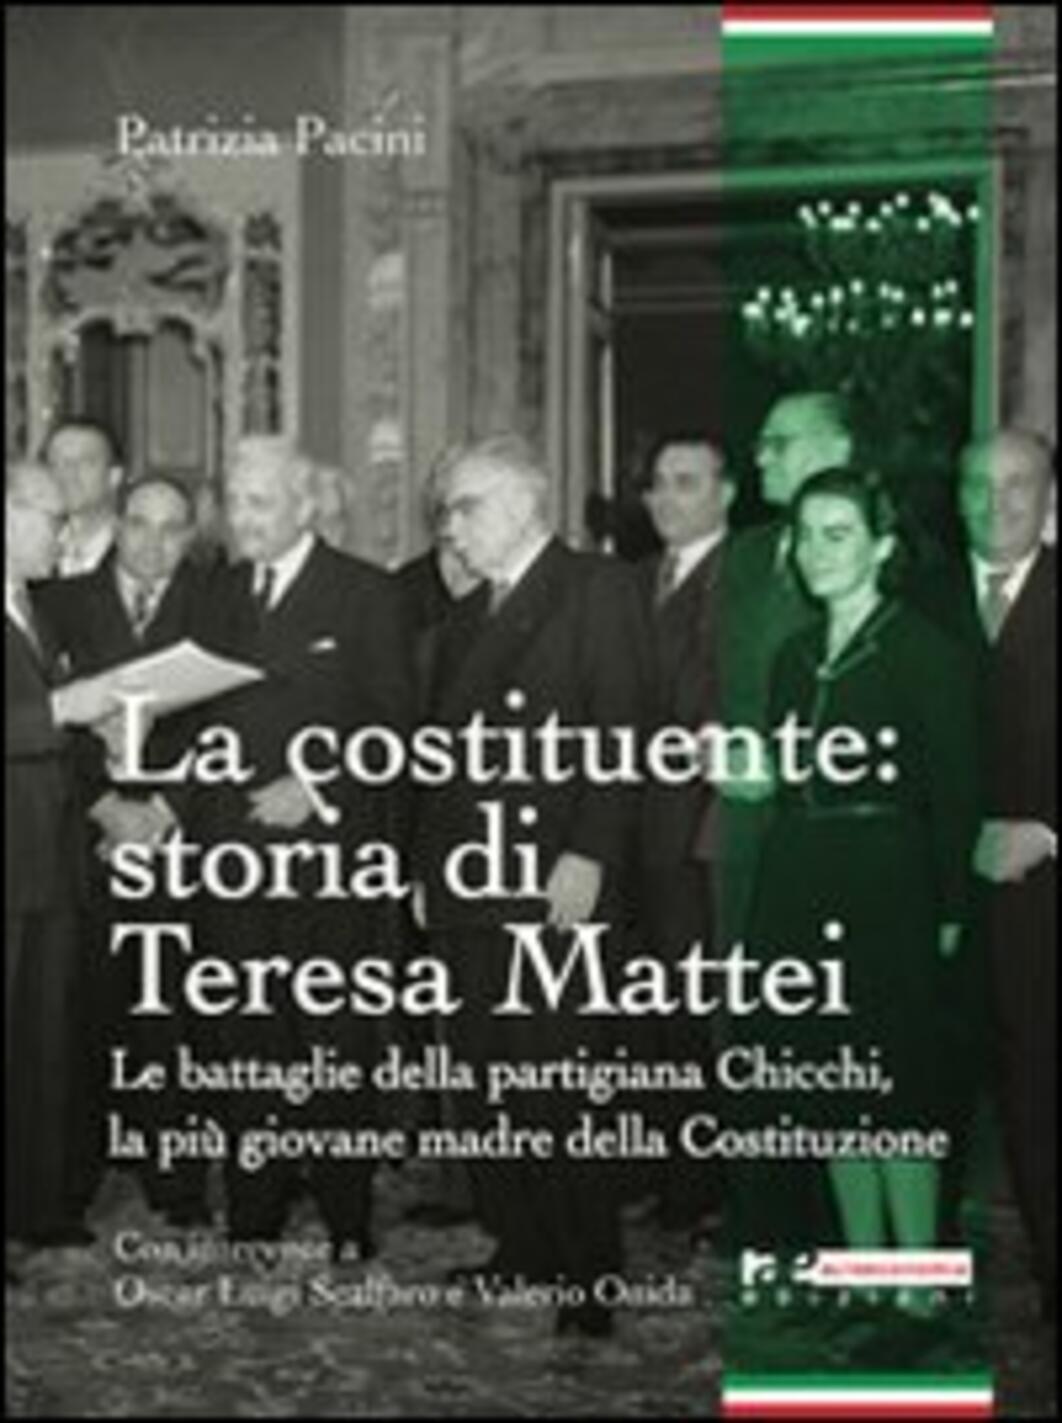 Costituente: storia di Teresa Mattei. le battaglie della partigiana chicchi, la più giovane madre della costituzione (la)